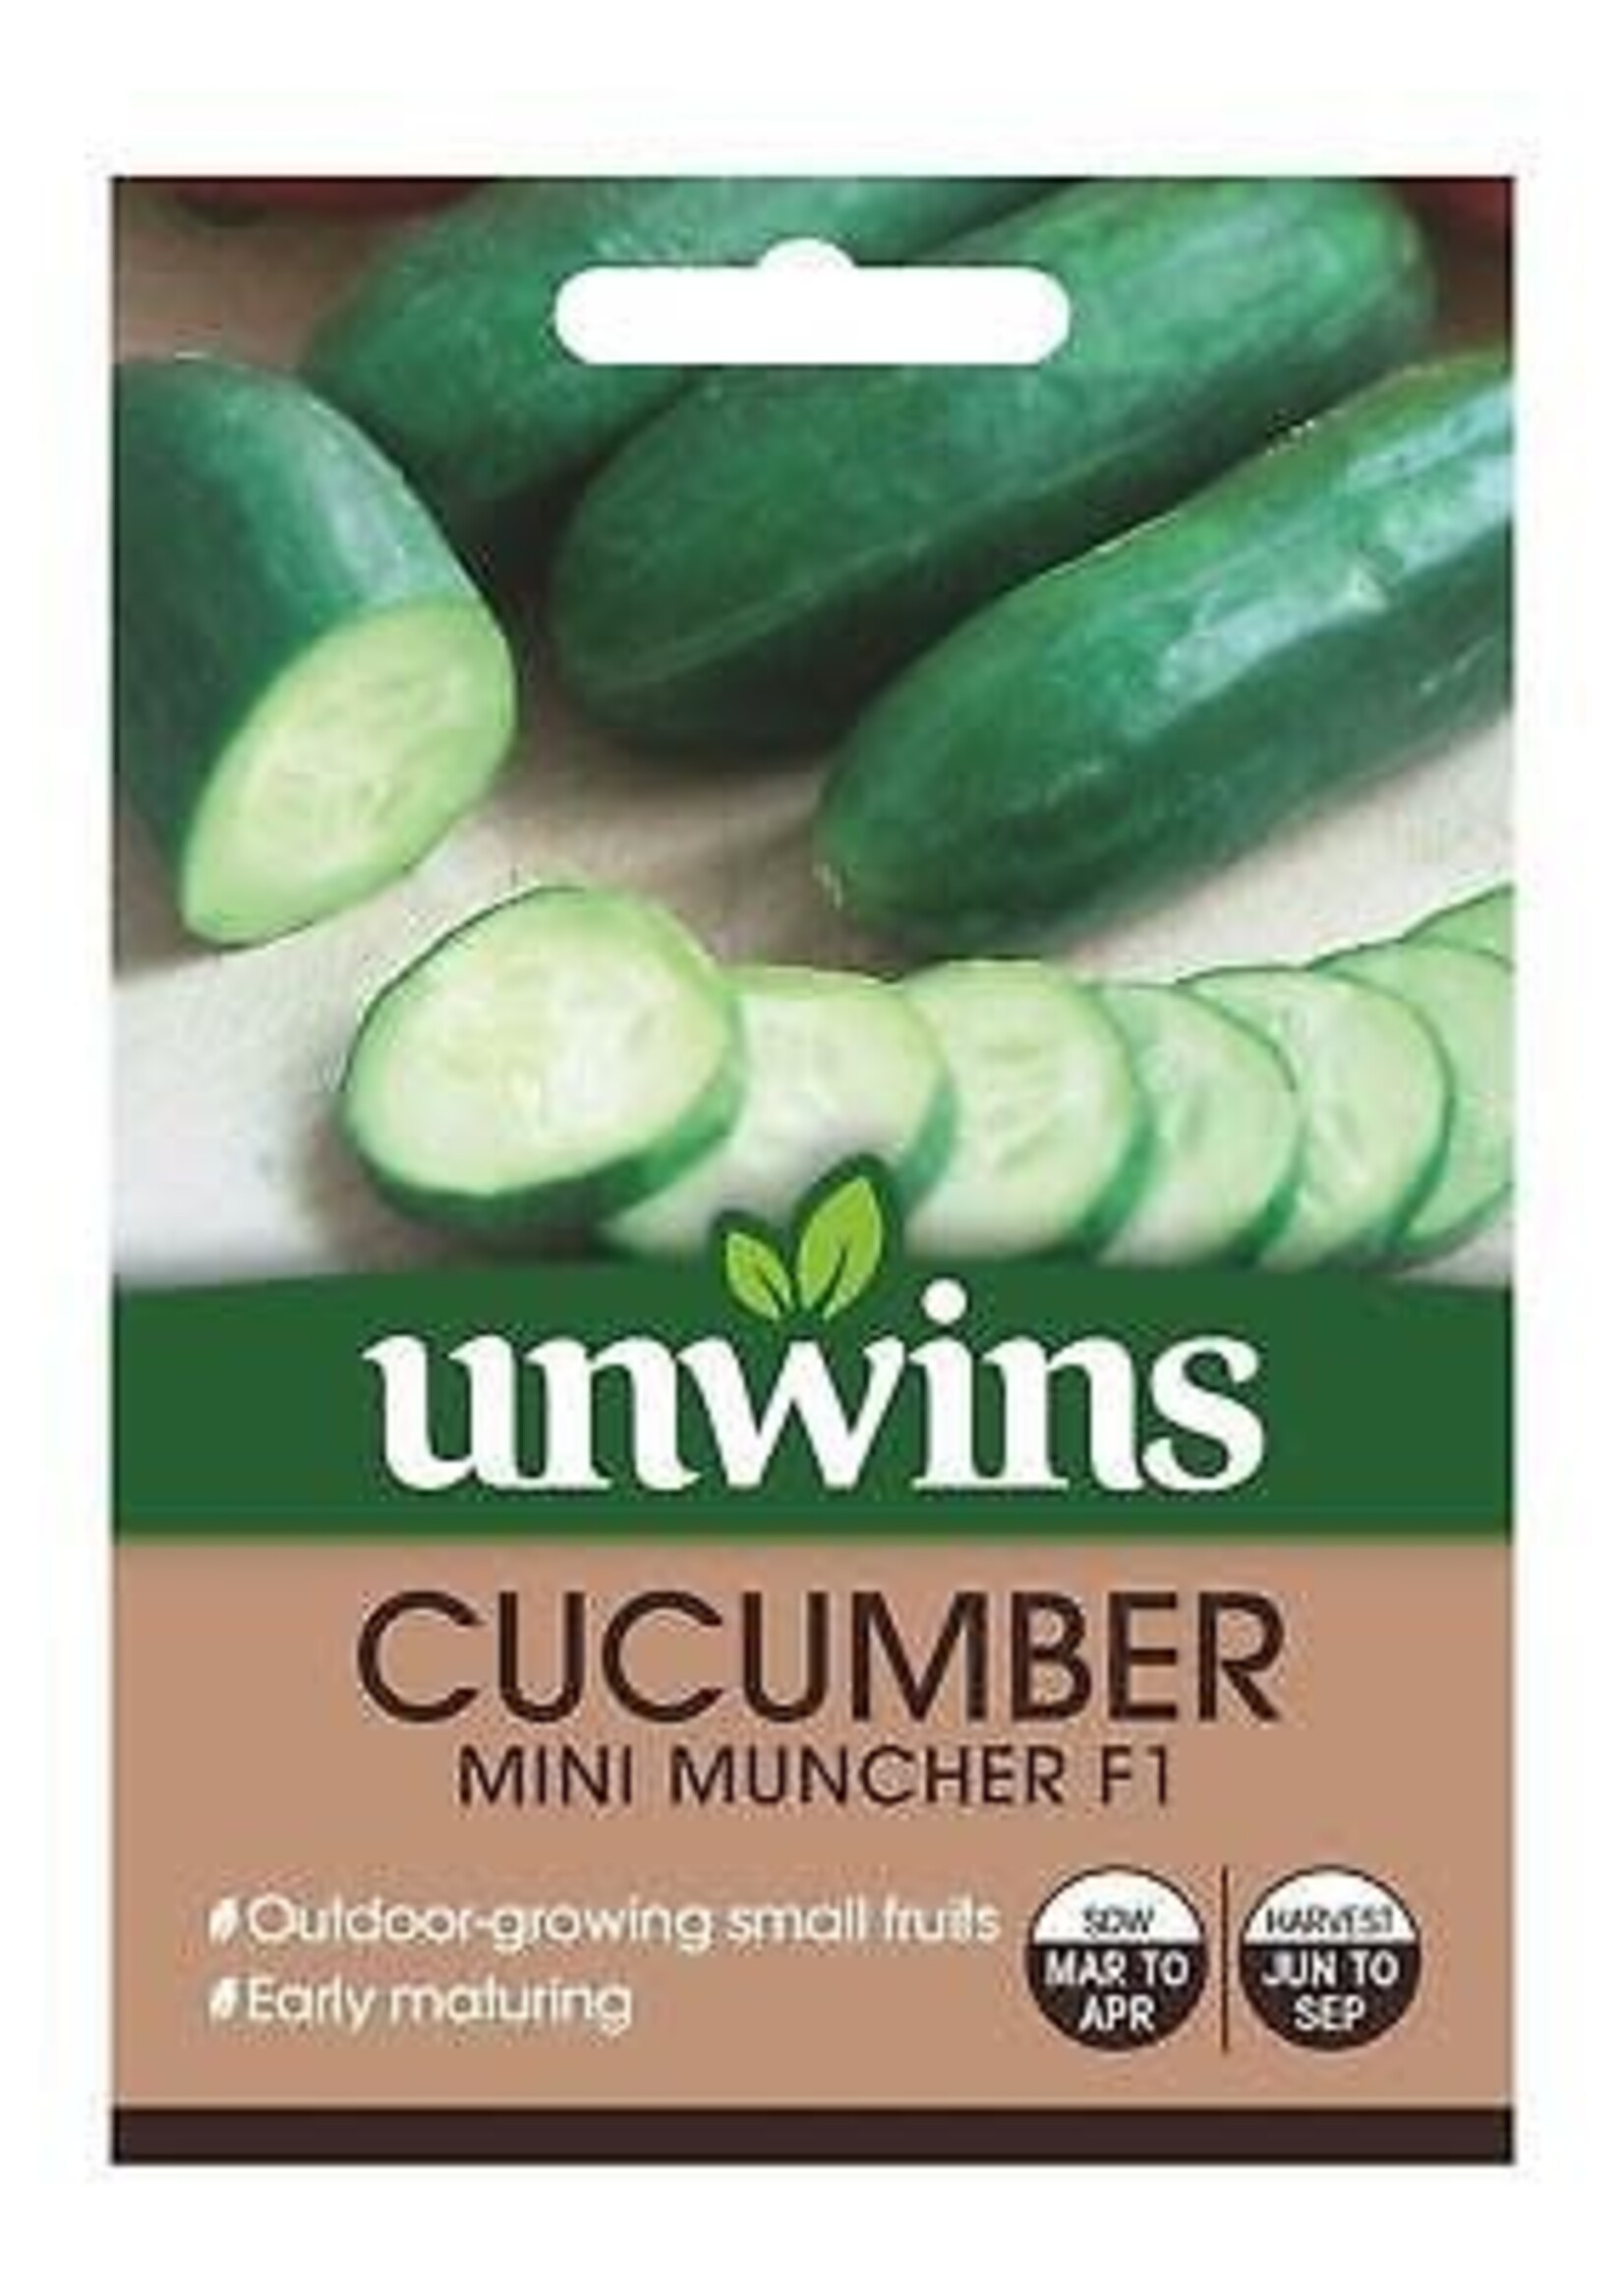 Unwins Cucumber - Mini Muncher F1